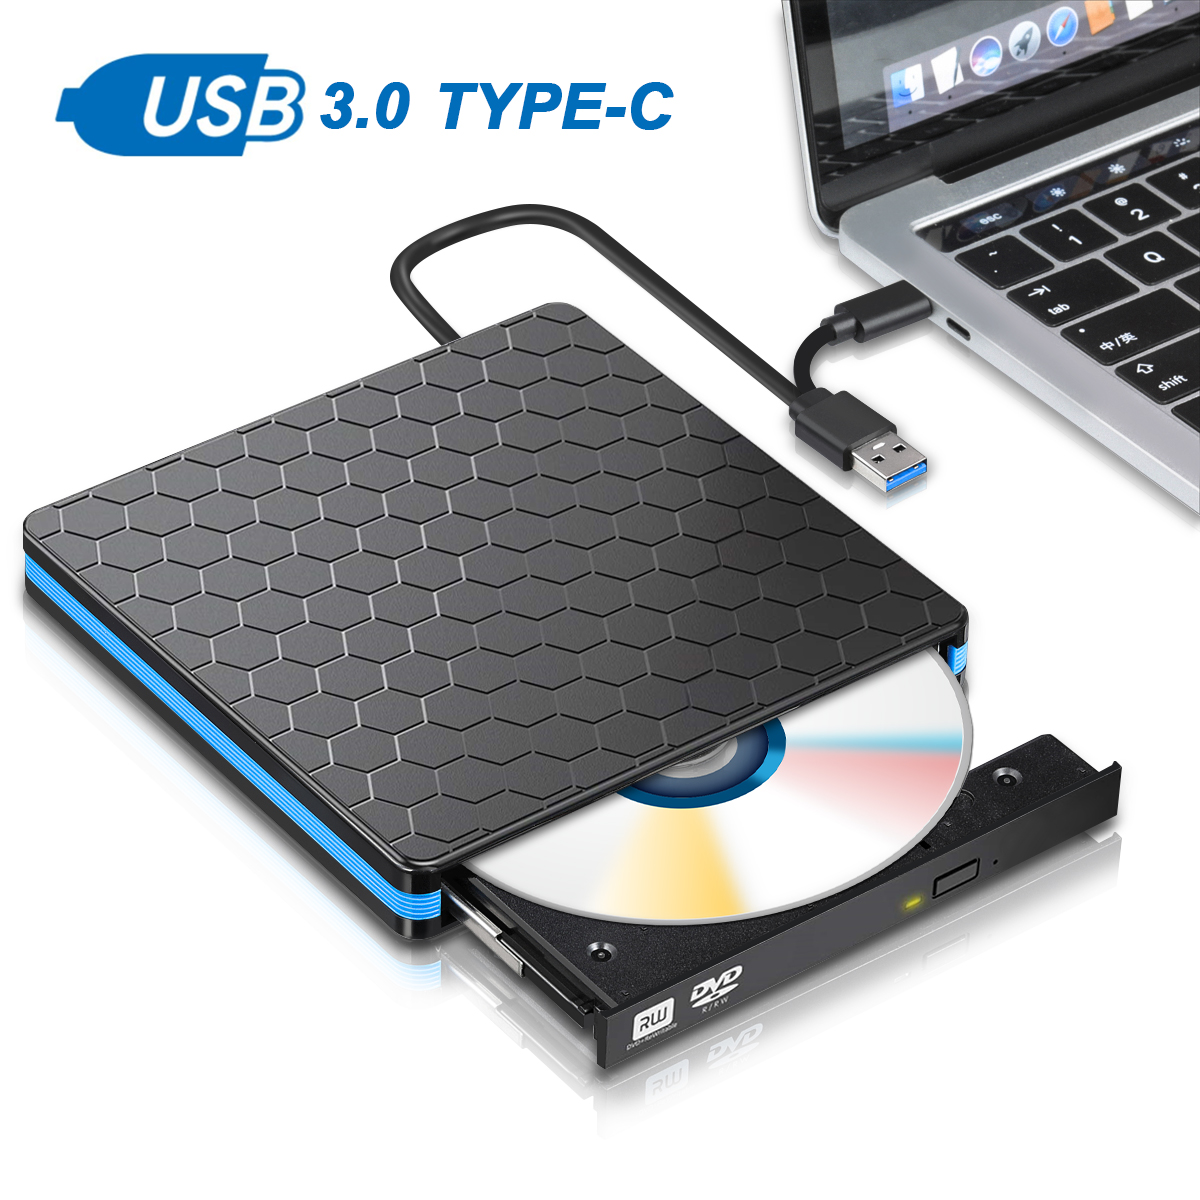 USB 2.0 External CD/DVD Drive for Compaq presario v6630et 